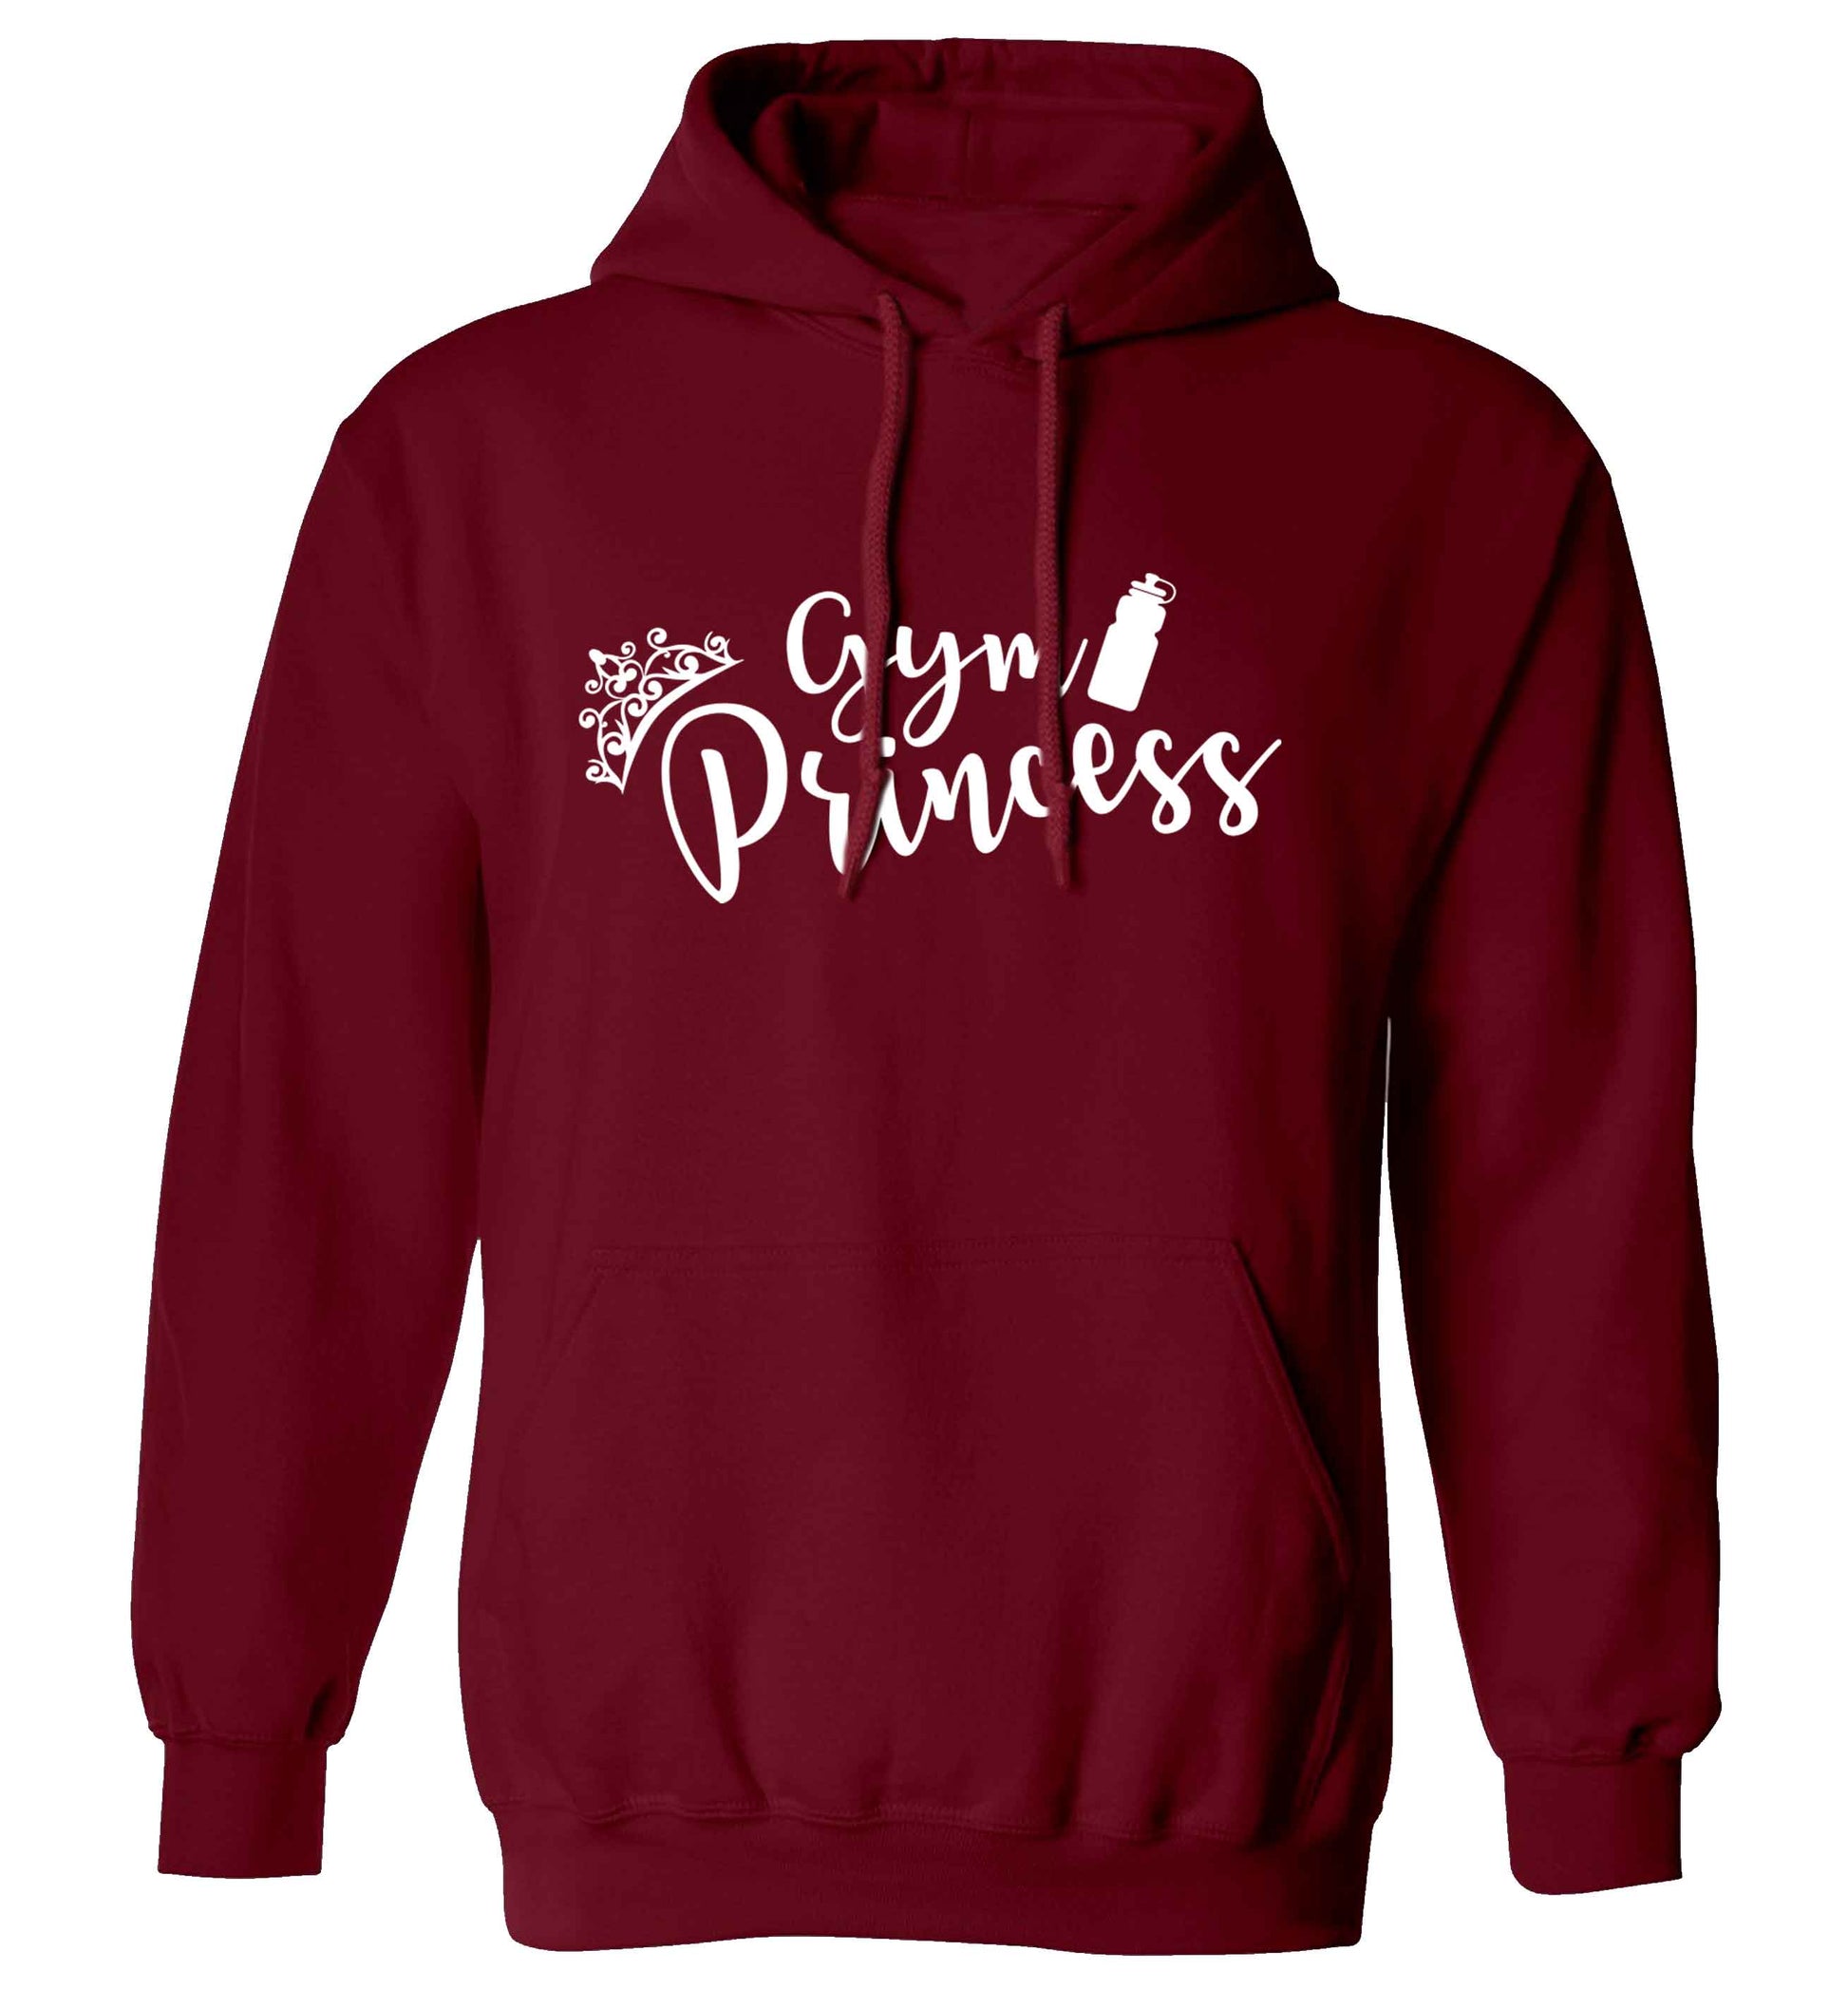 Gym princess adults unisex maroon hoodie 2XL